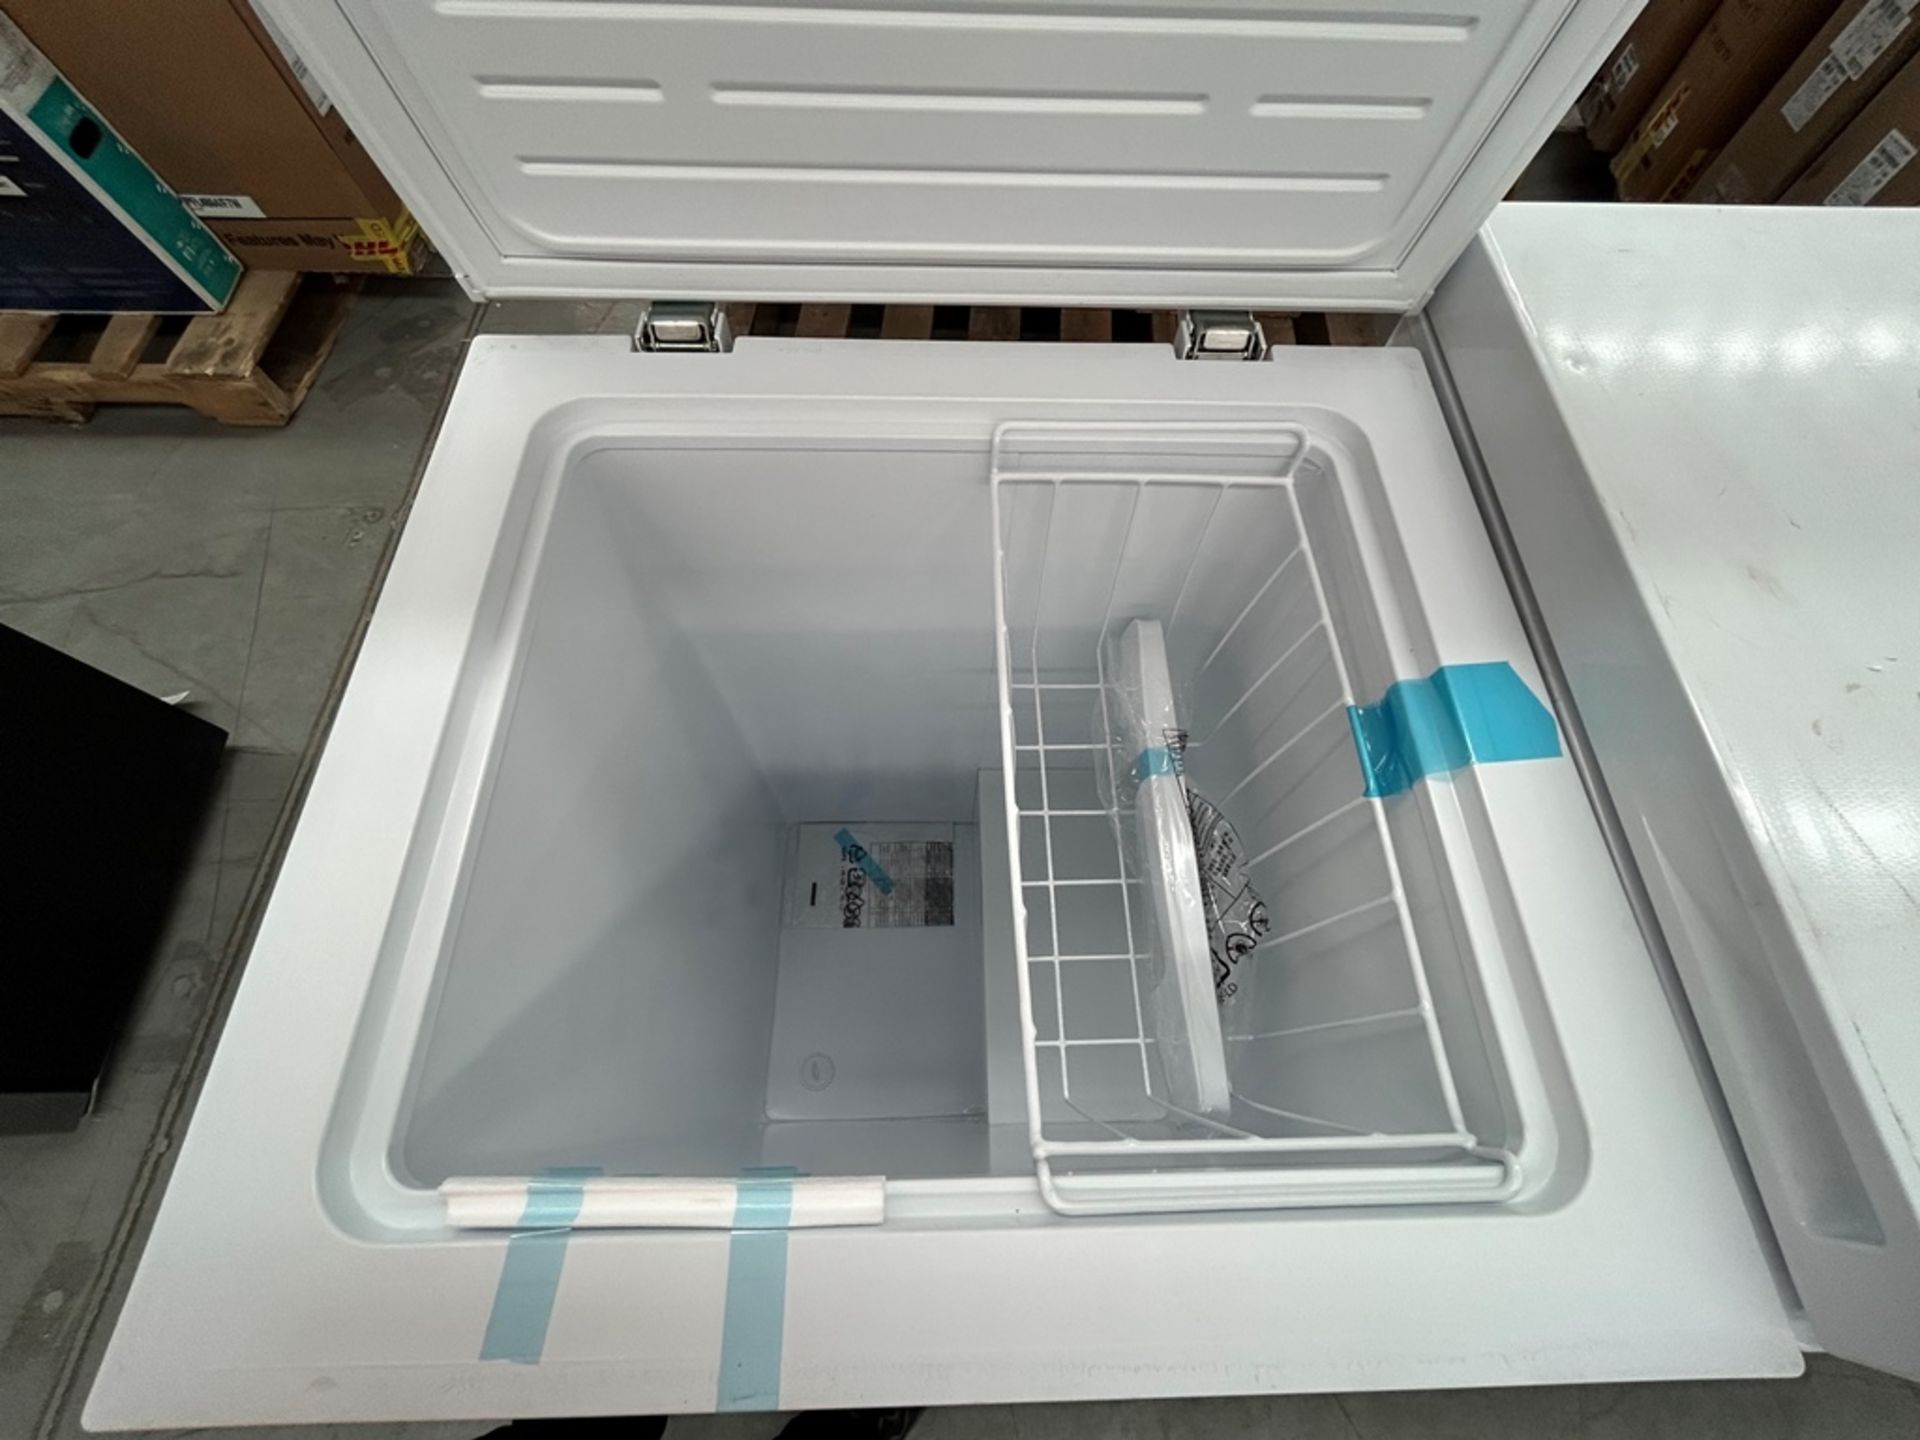 2 congeladores contiene: 1 congelador Marca HISENSE, Modelo FC70D6BWX, Color BLANCO; 1 congelador M - Image 4 of 6